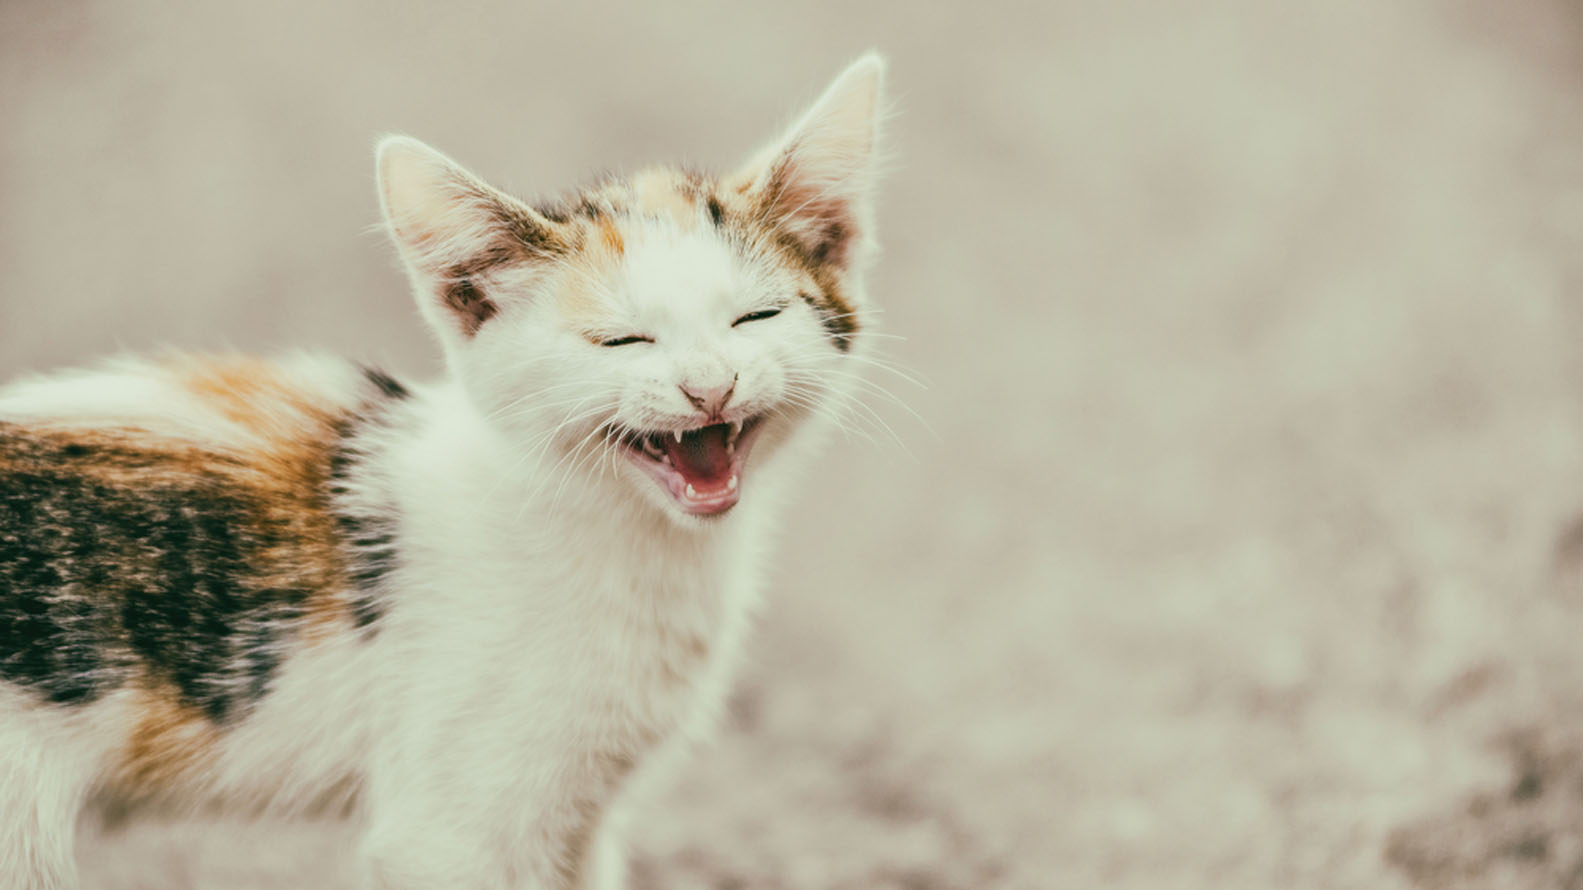 El sonido que emiten los gatos pueden signficar varias cosas, pueden realizarlos para llamar la atención de sus dueños hasta externar molestia (Shutterstock)